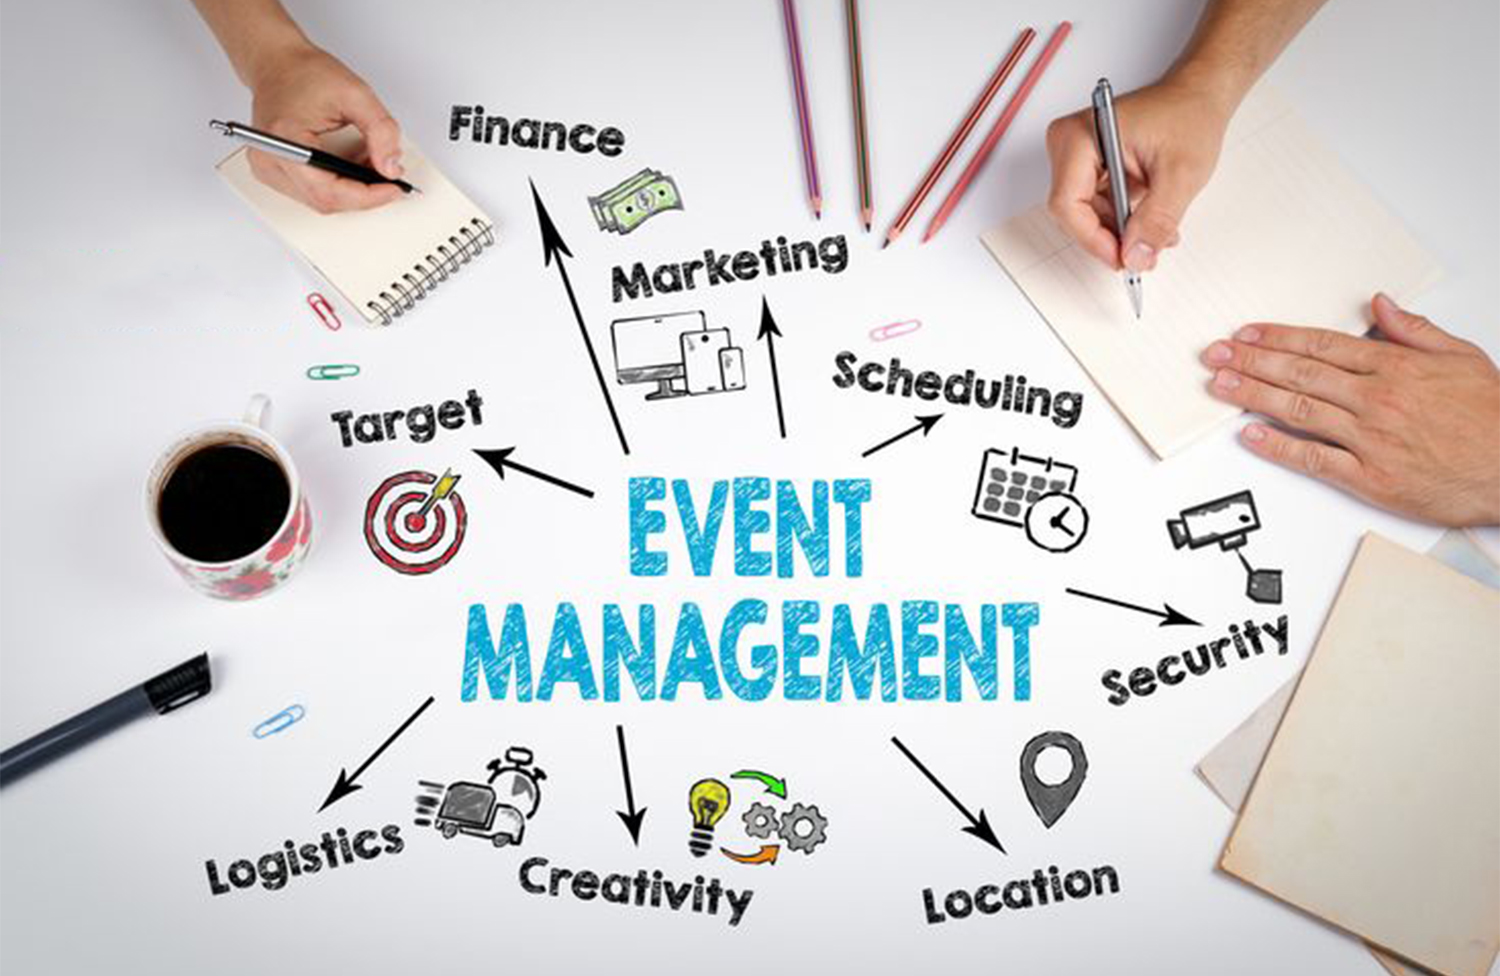 EVENTS MANAGEMENT